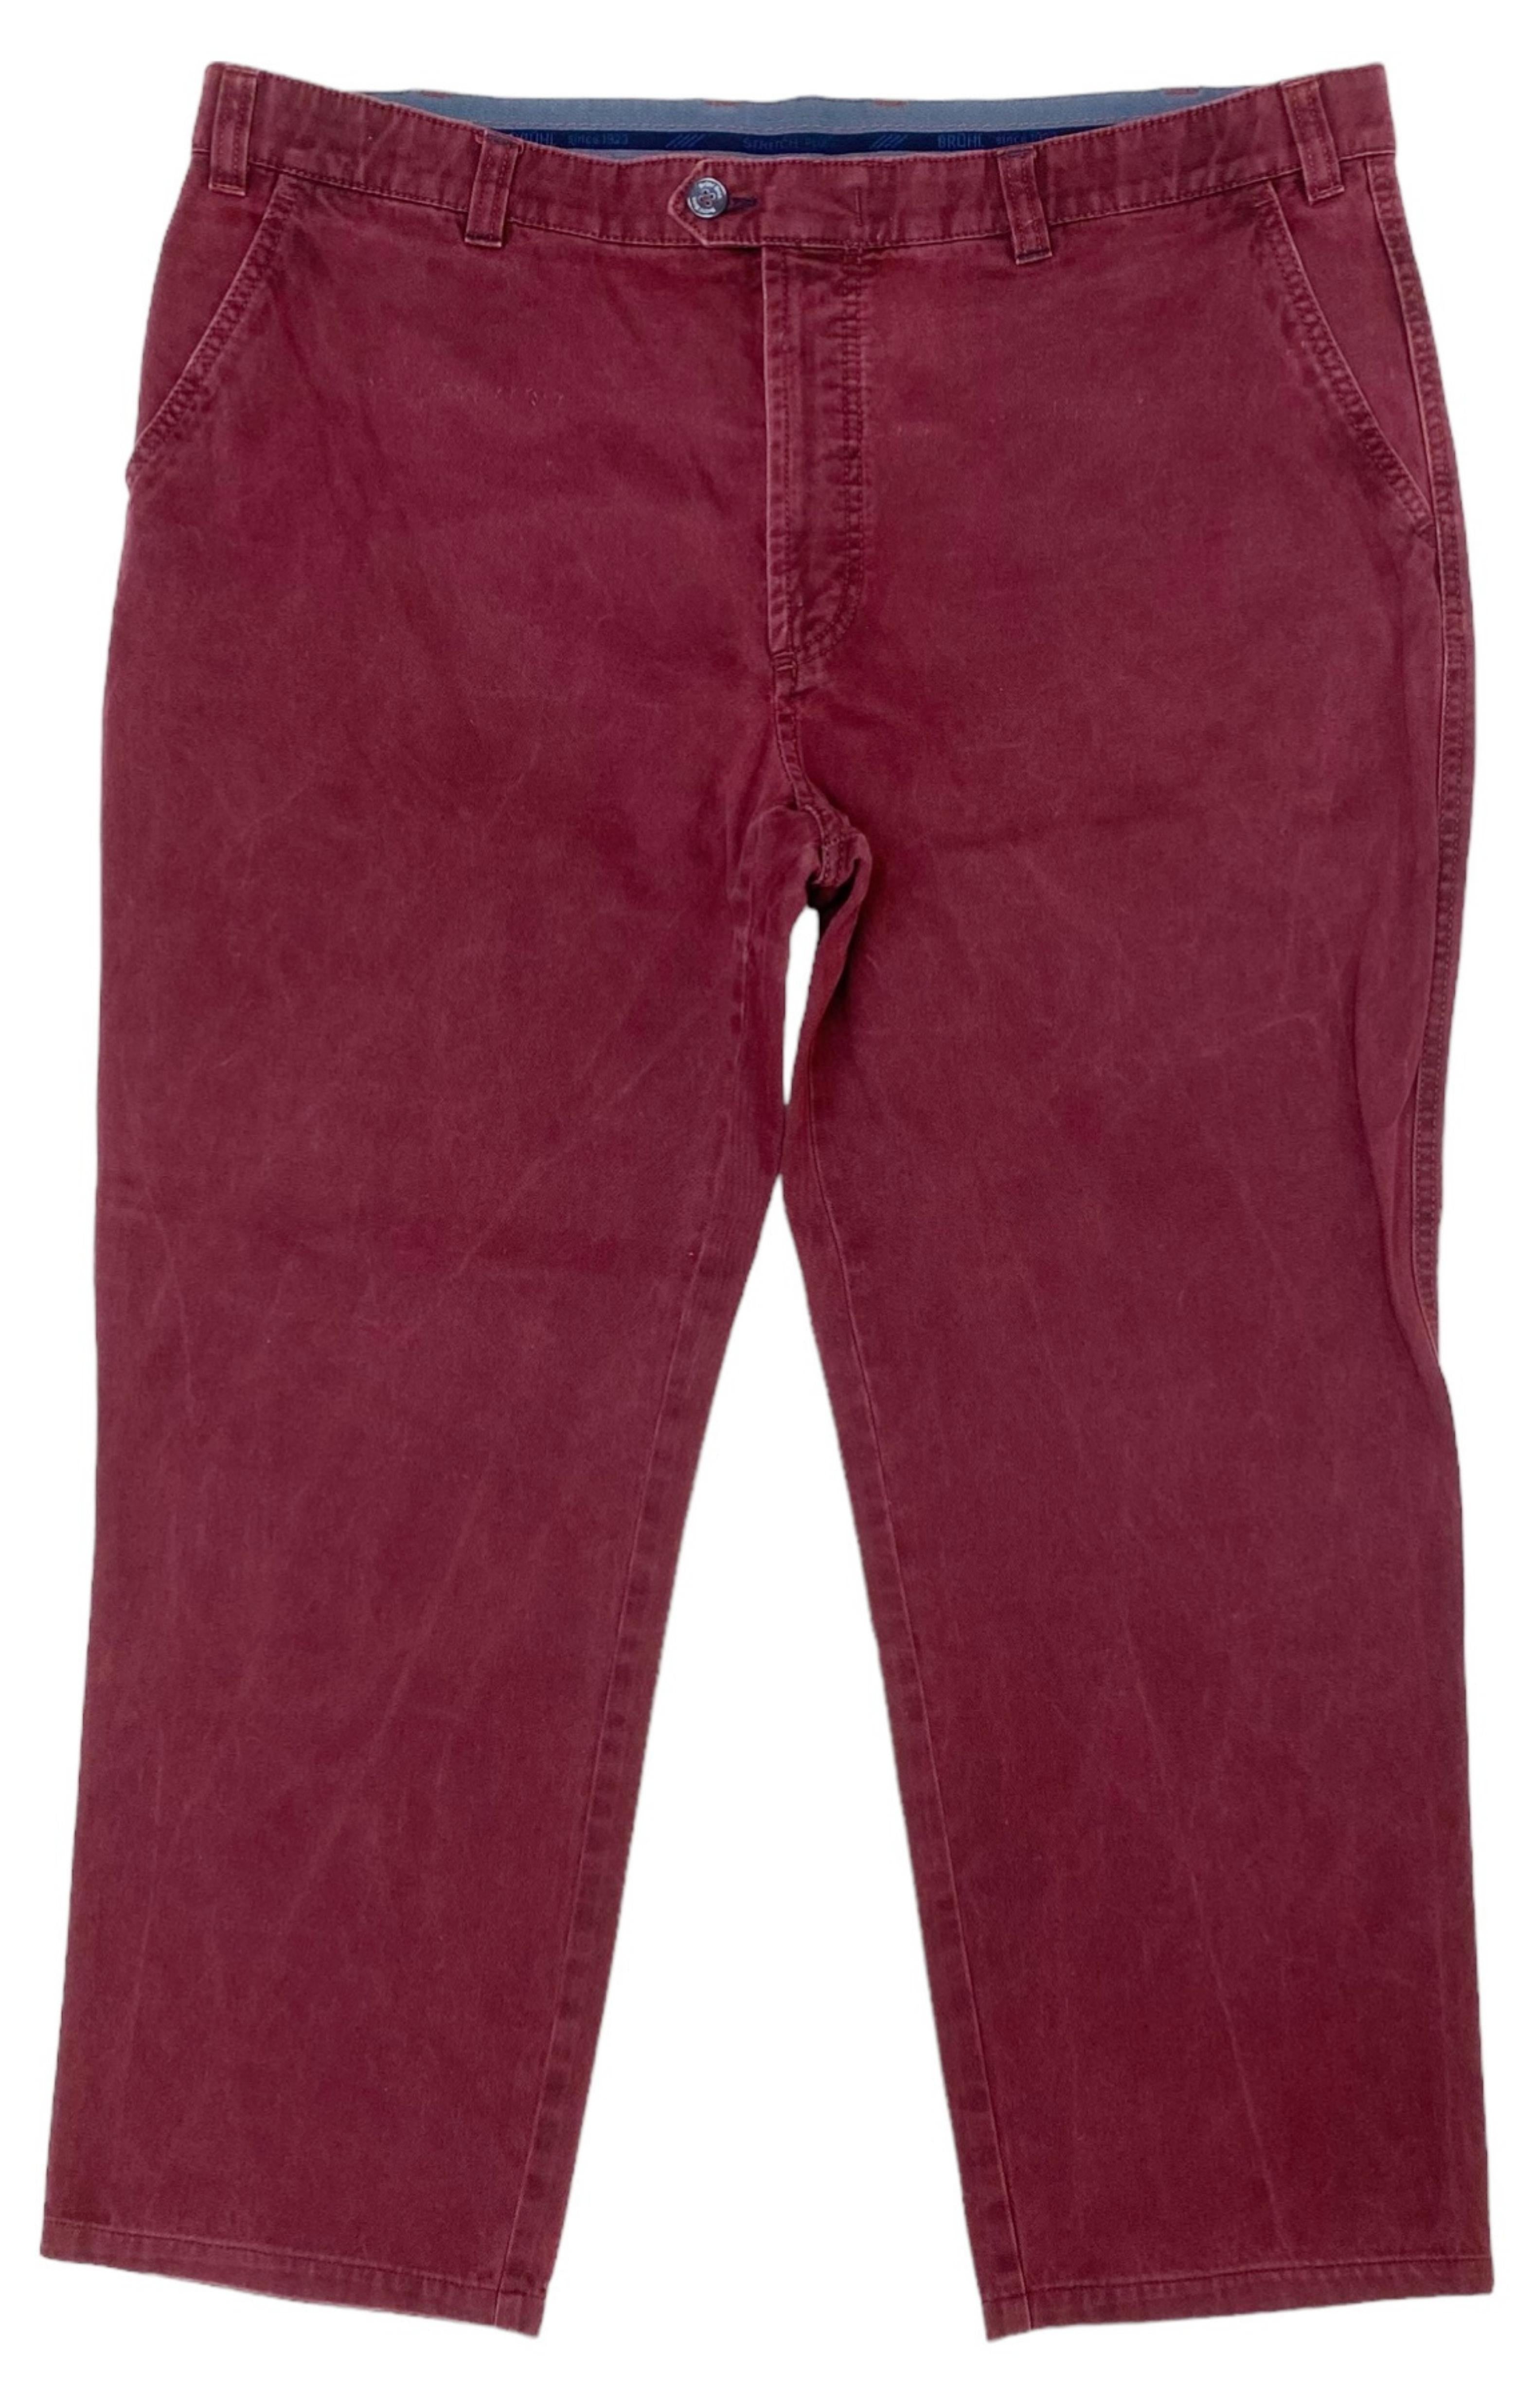 BRÜHL (RARE) Pants Size: 42R